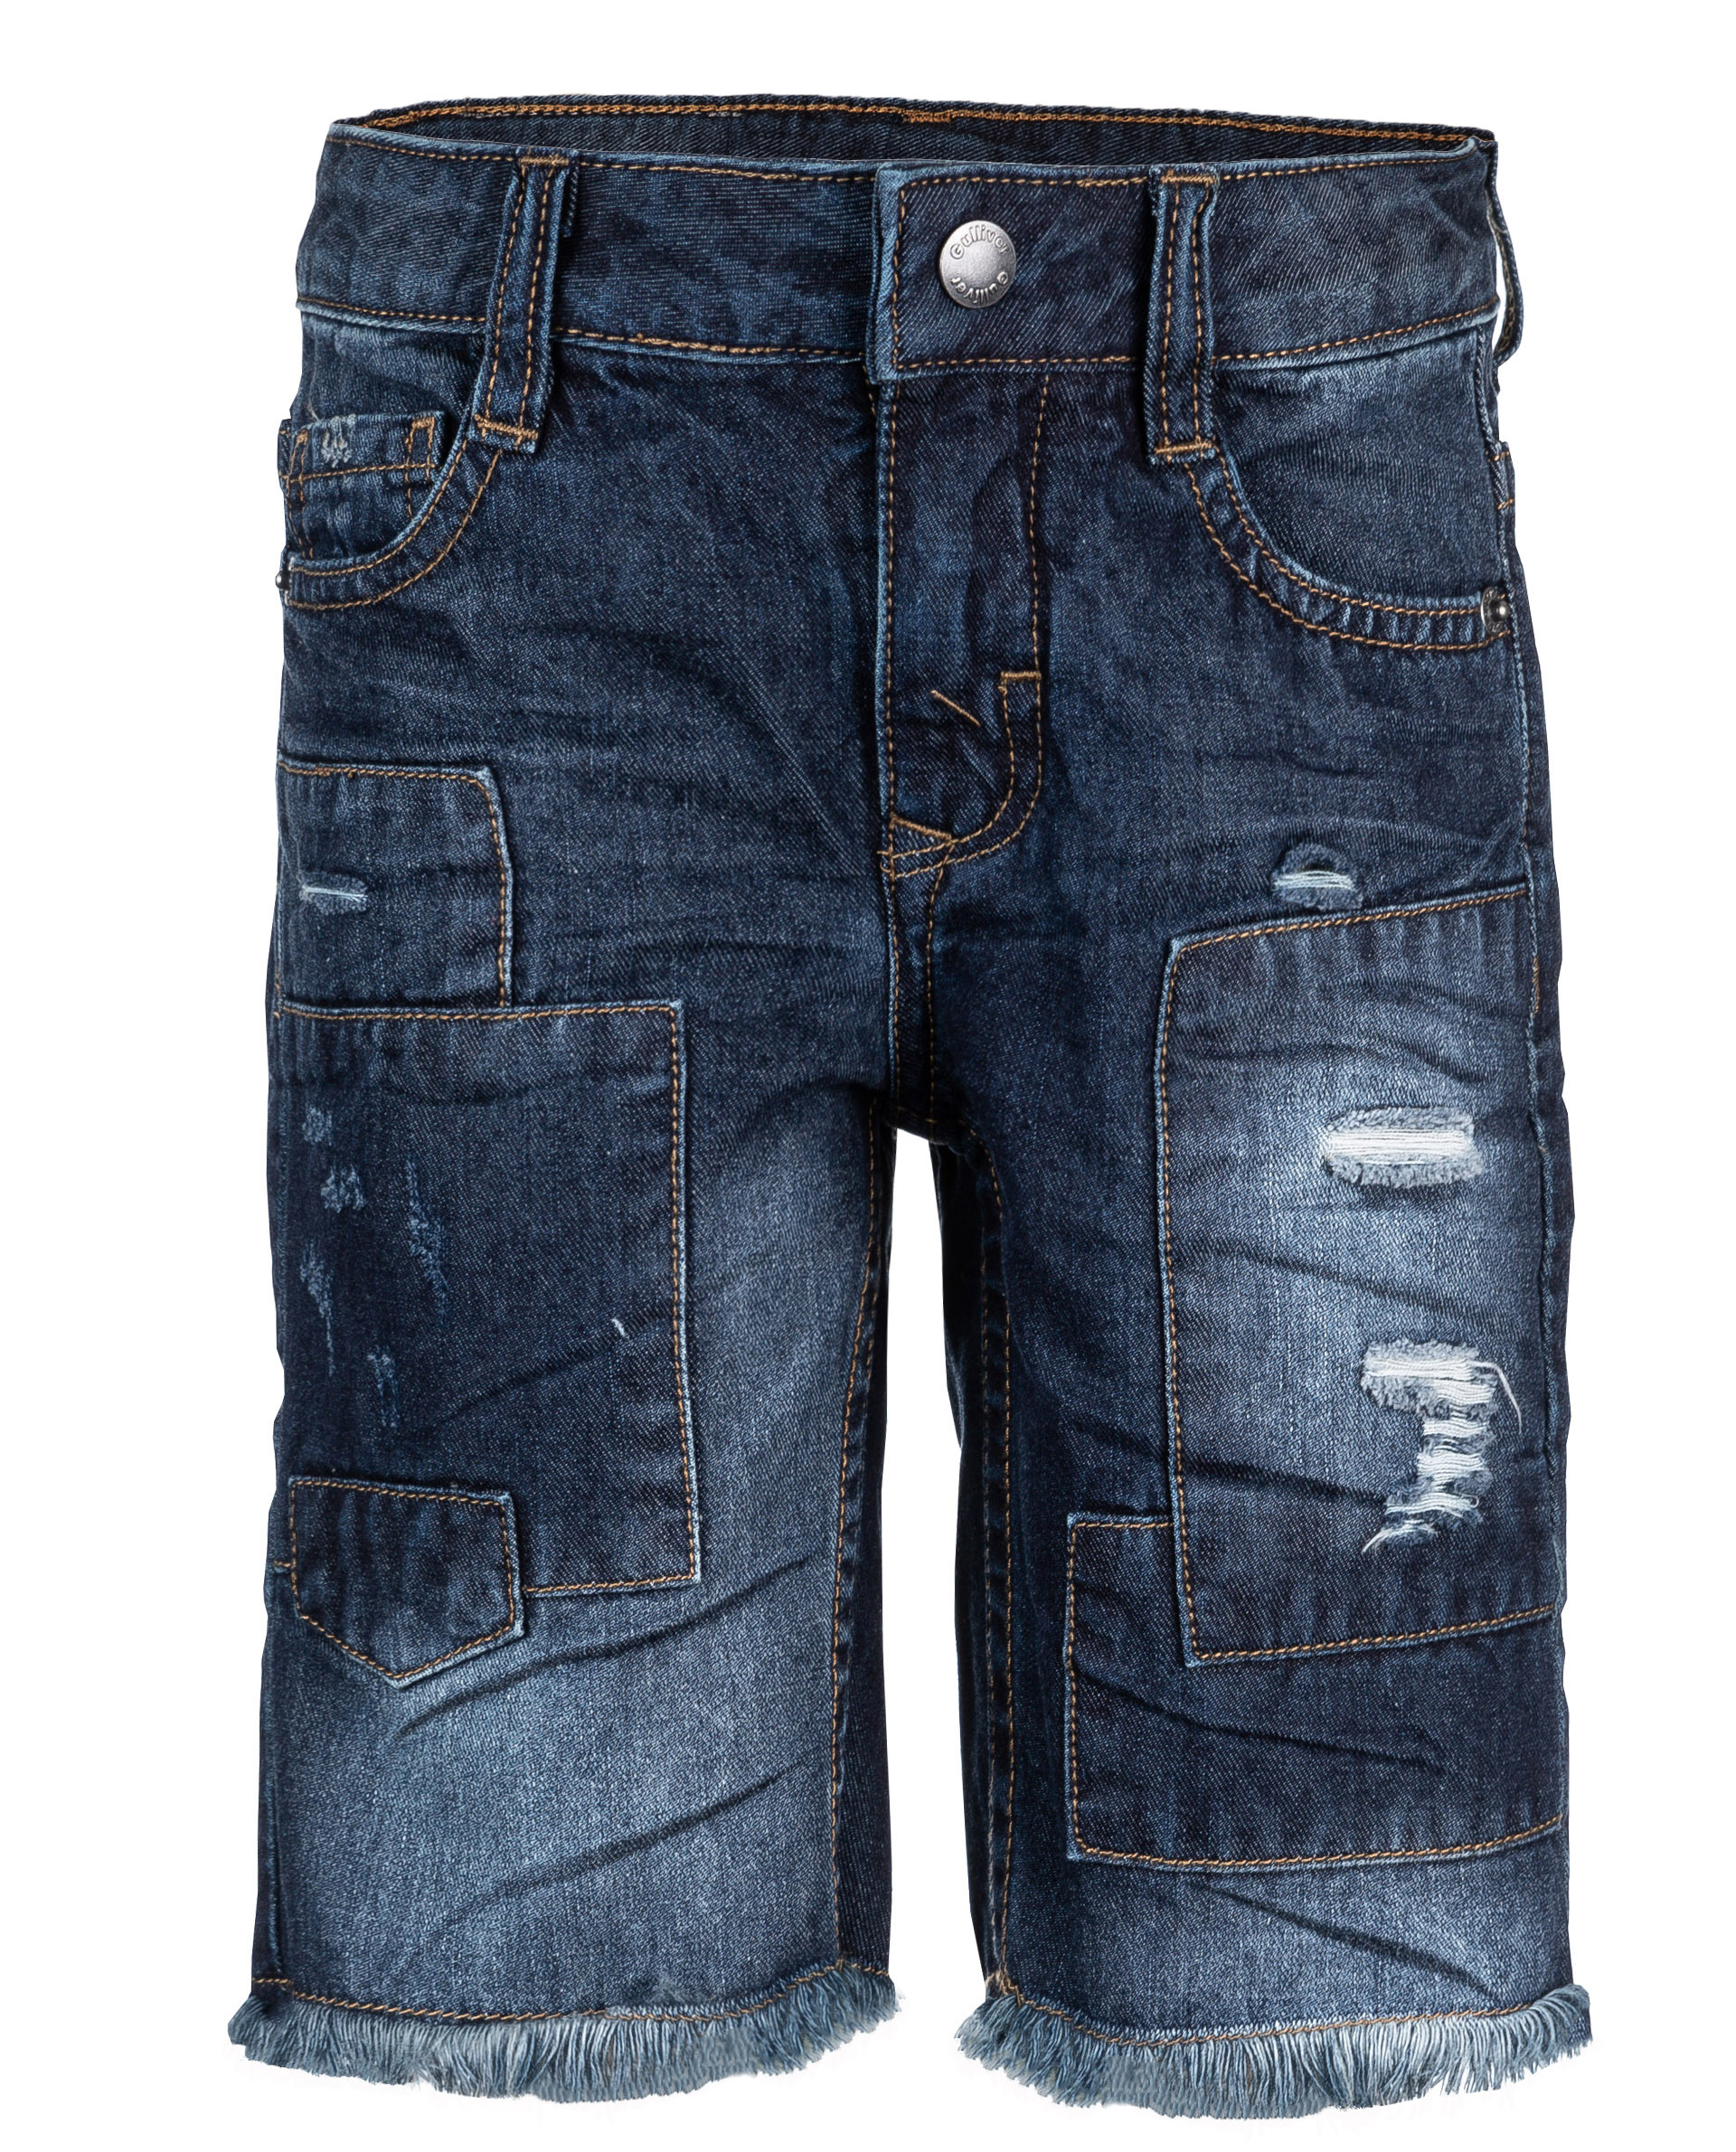 Купить 11906BMC6003, Синие джинсовые шорты Gulliver, синий, 98, Мужской, ВЕСНА/ЛЕТО 2019 (shop: GulliverMarket Gulliver Market)